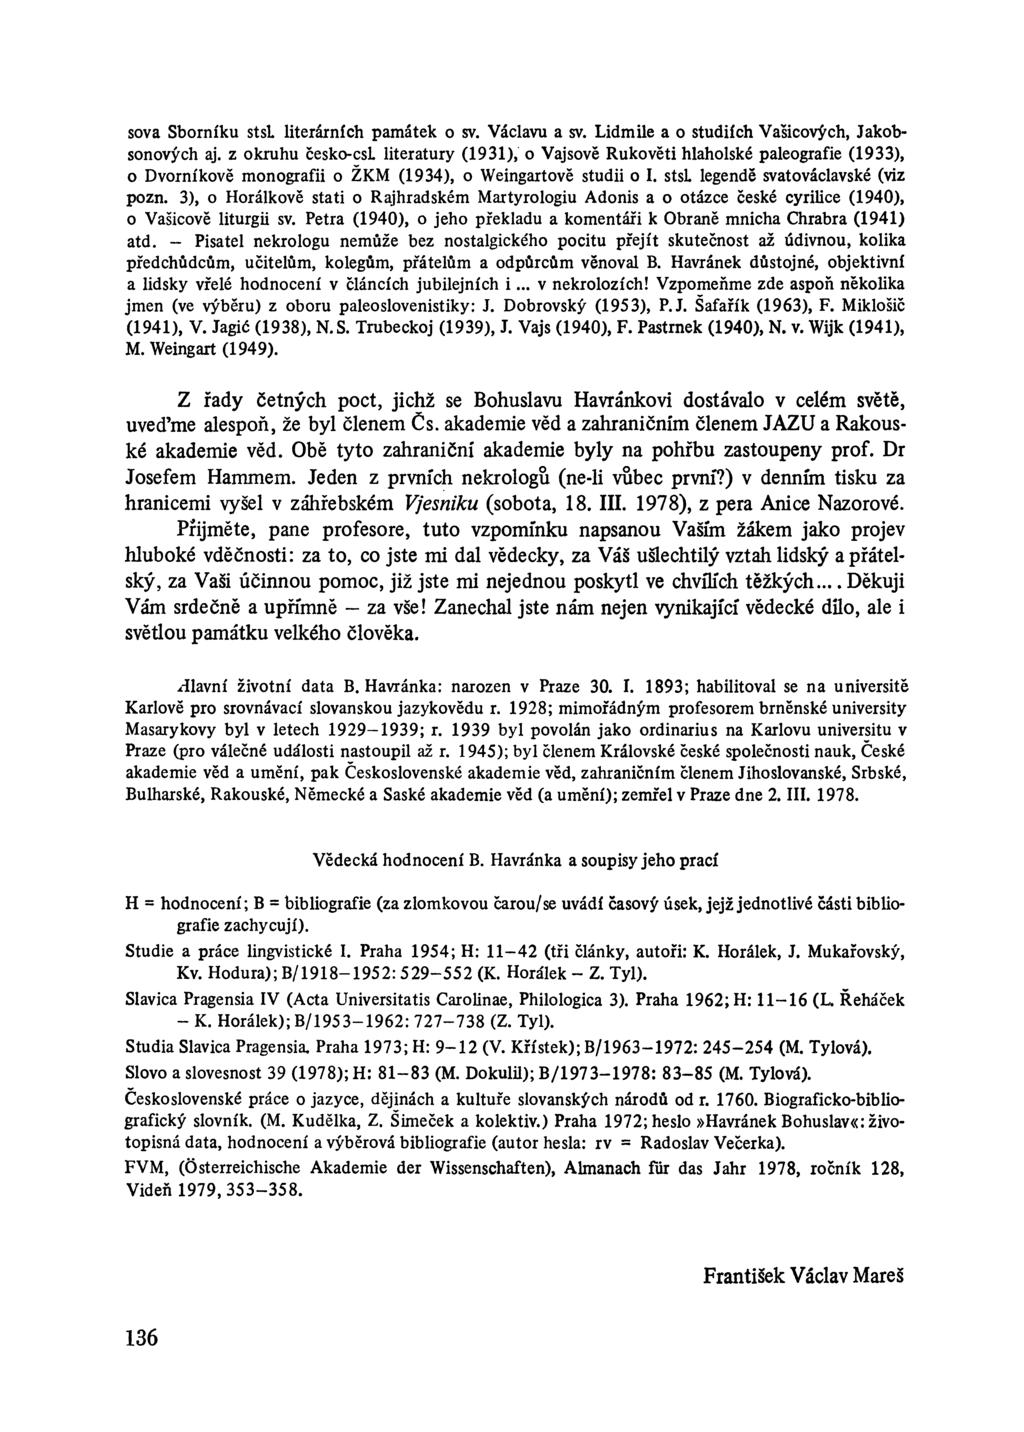 sova Sborníku stsl literárních památek o sv. Václavu a sv. Lidmile a o studiích Vašicových, Jakobsonových aj.